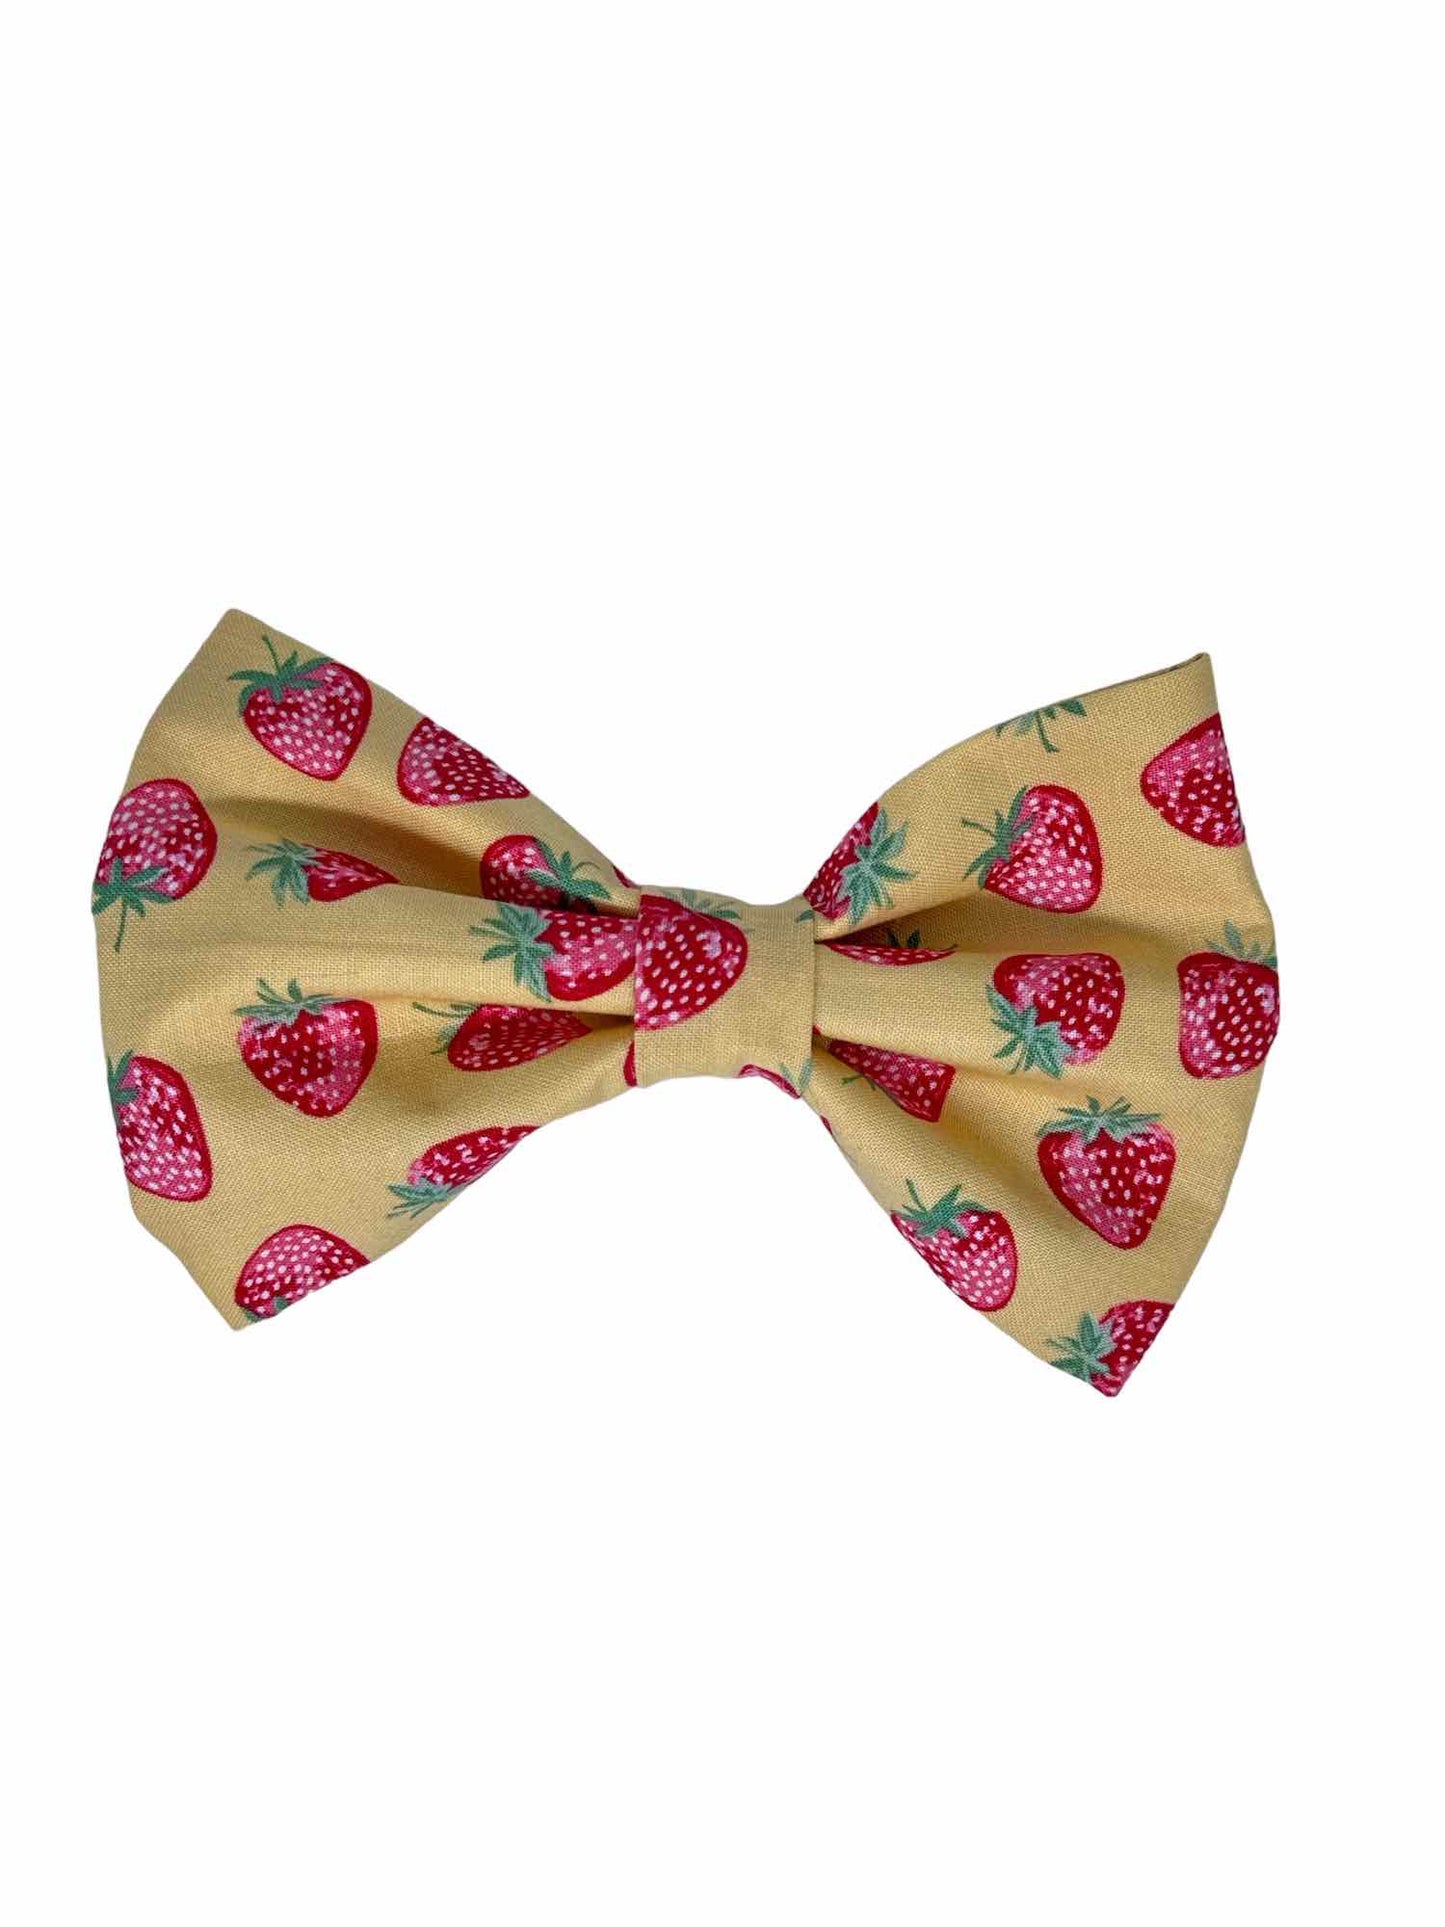 Strawberry Fields Bow Tie